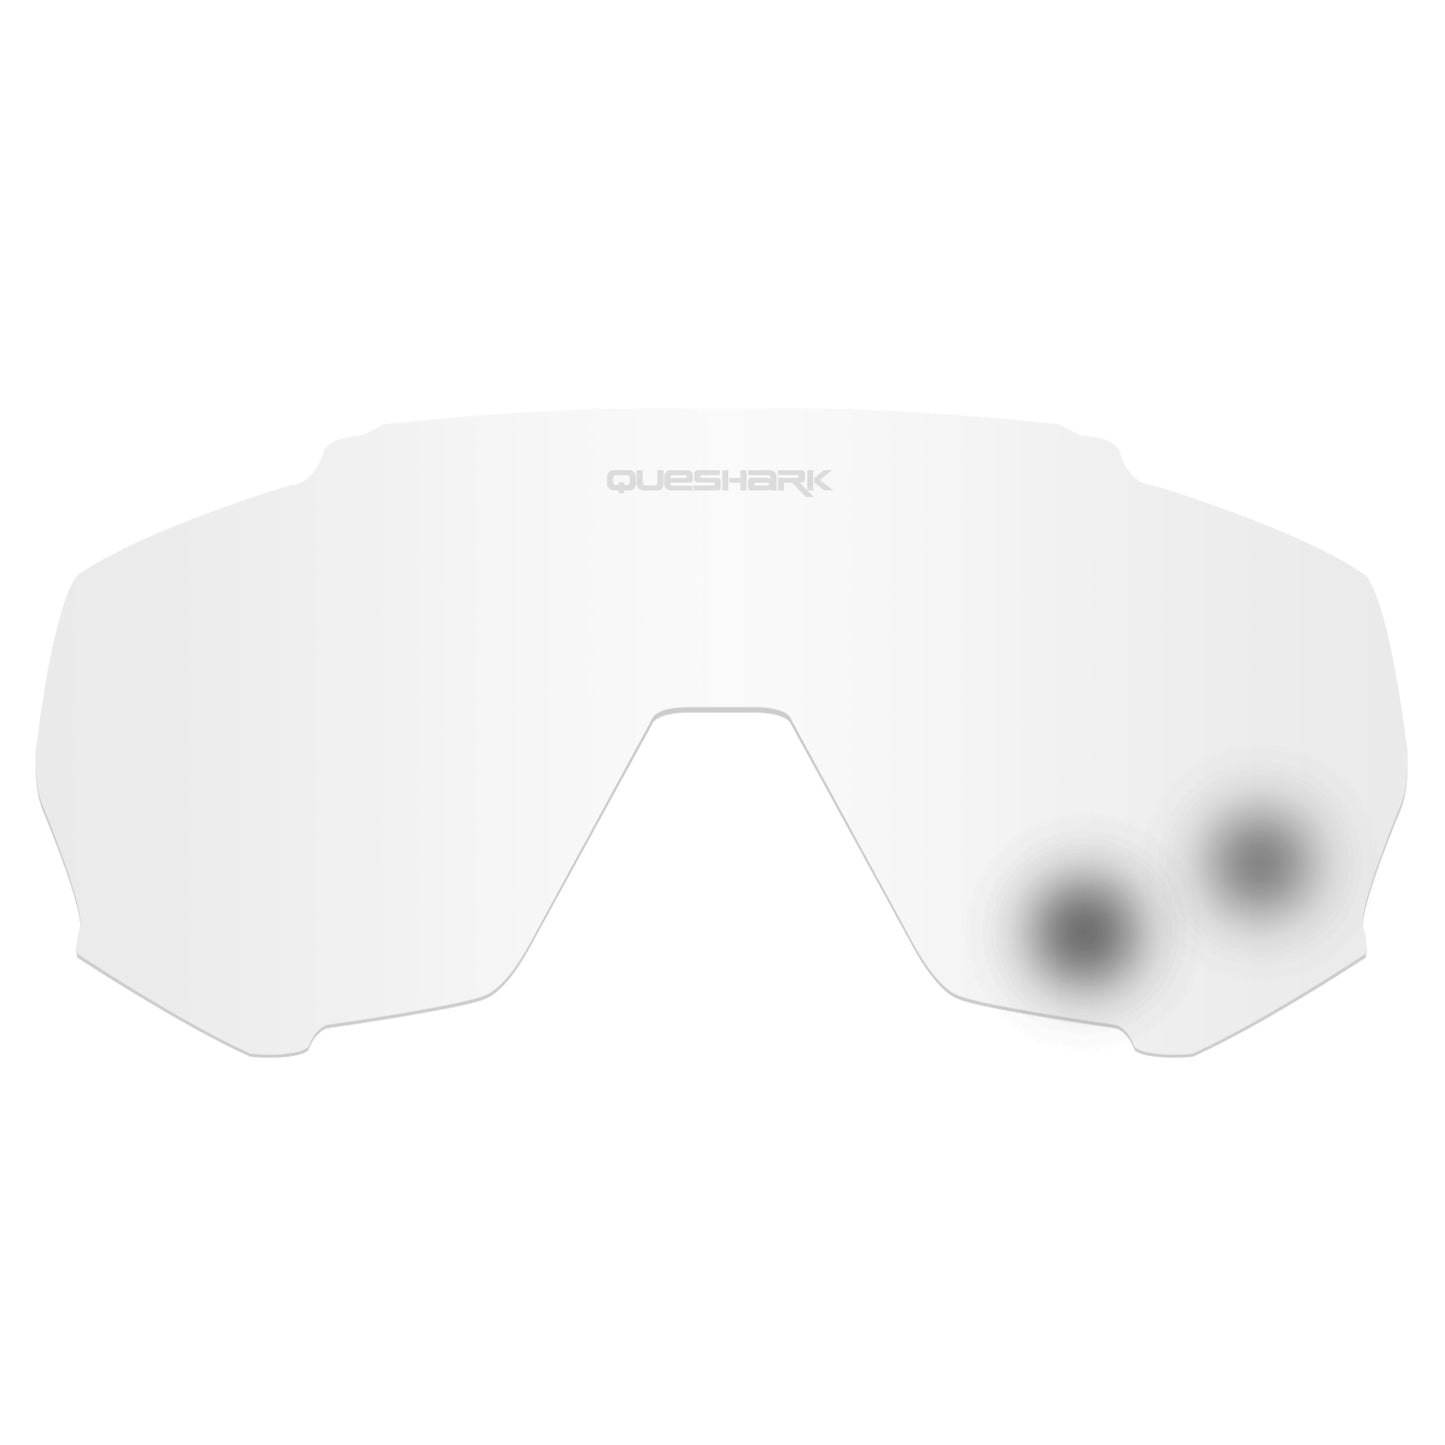 <transcy>Acessórios de lentes fotocromáticas QE48 para óculos de ciclismo série QE48</transcy>